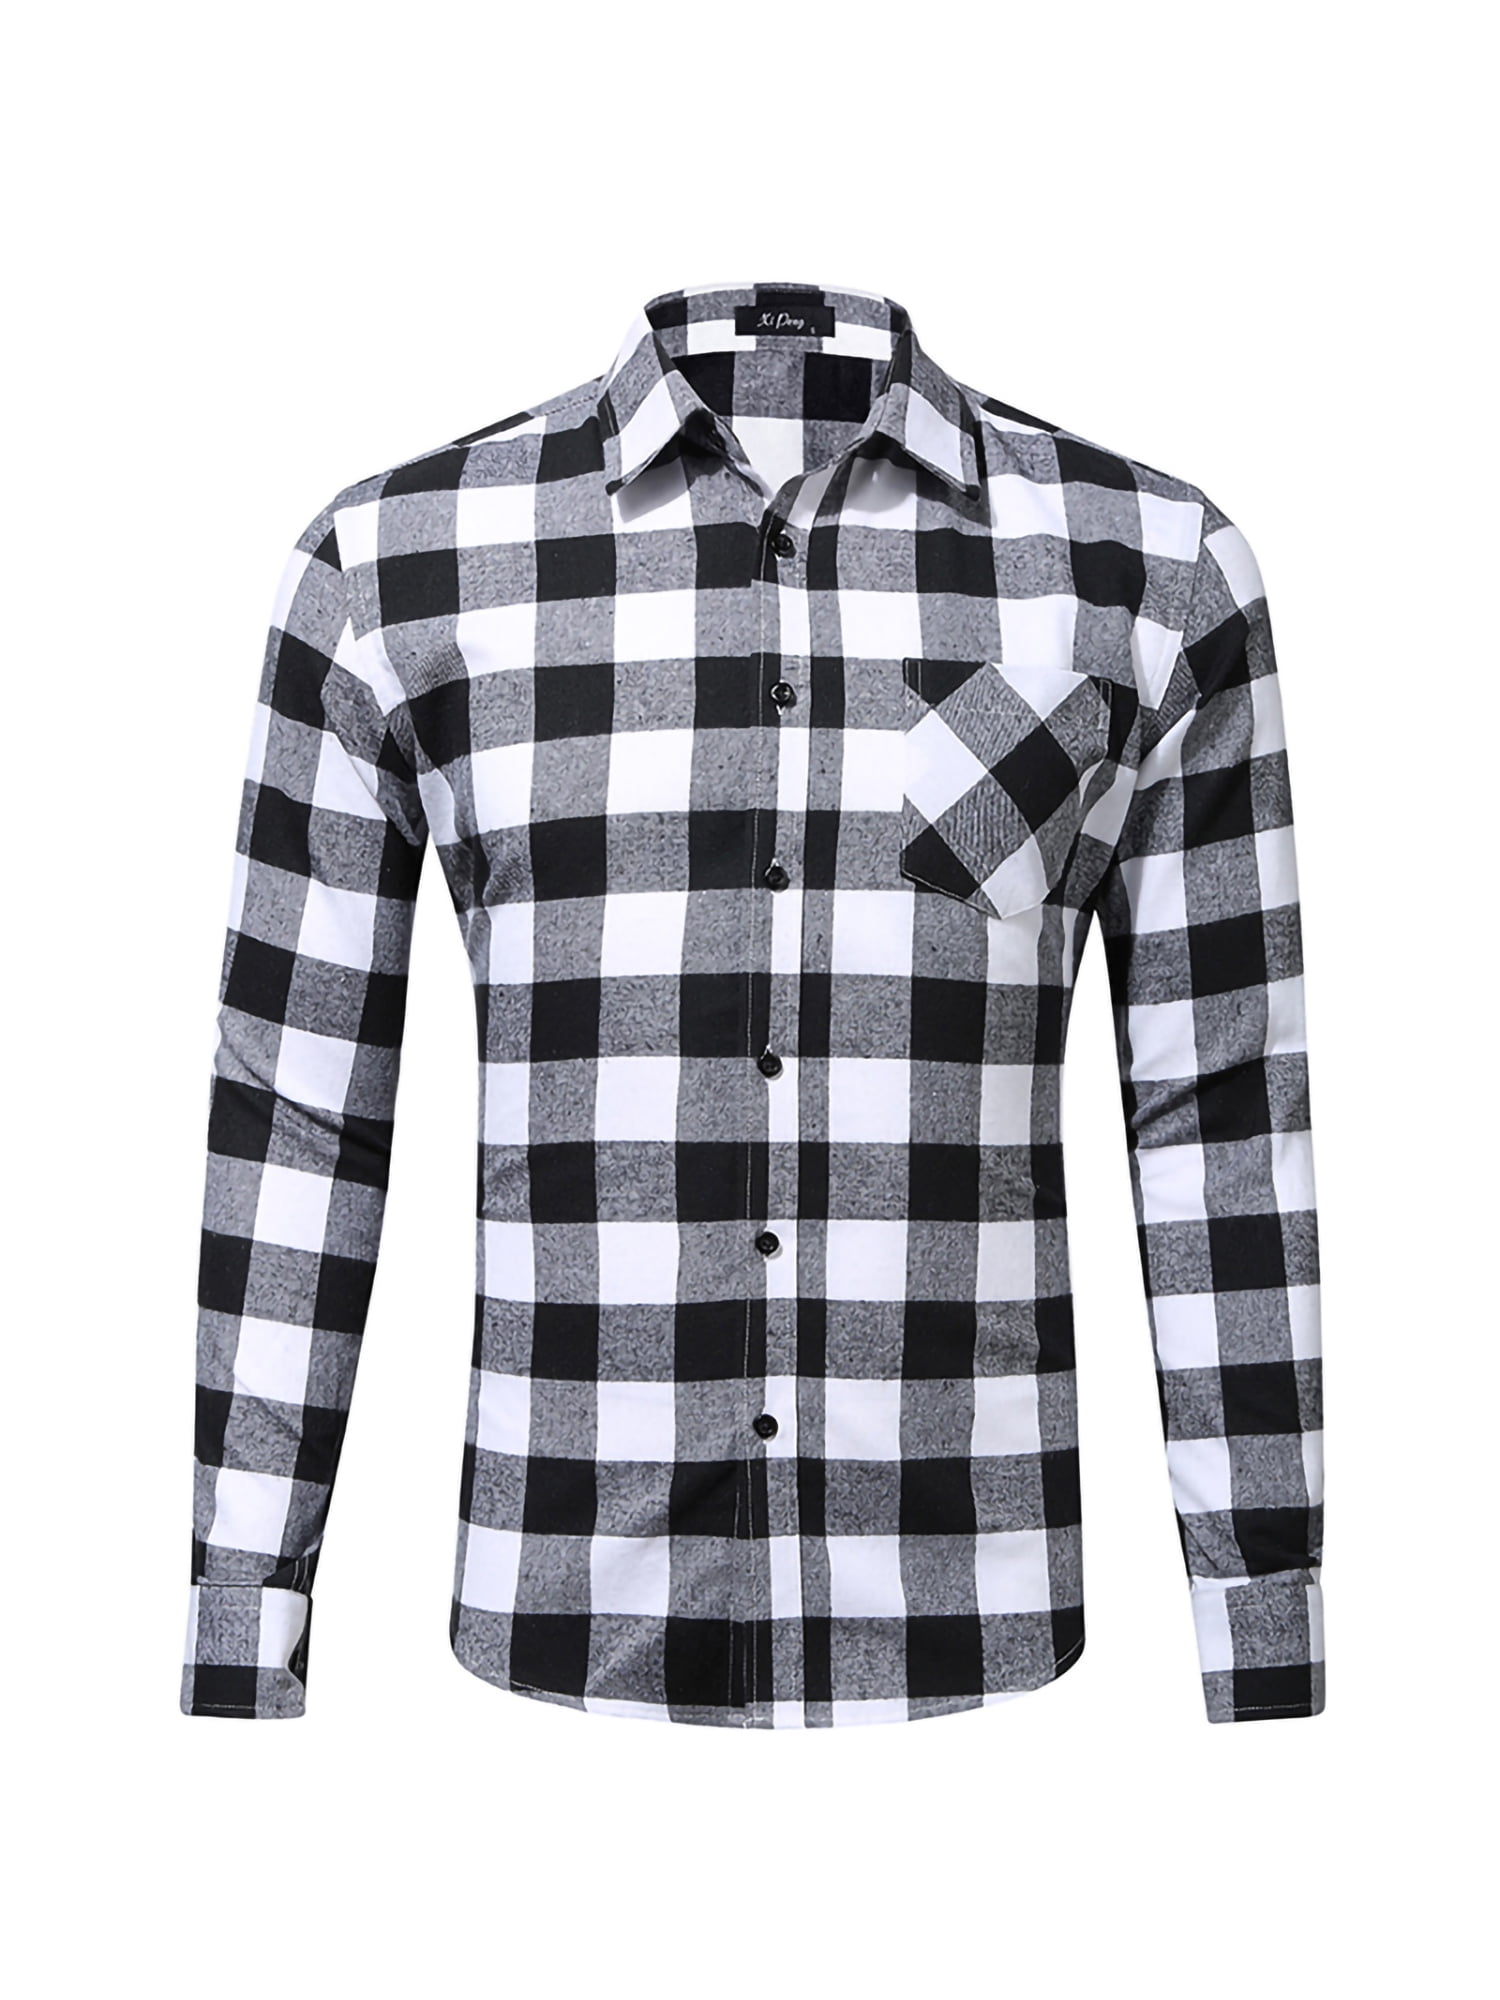 Yomiafy Mens Fashion Slim-Fit Plaid Long Sleeve Shirts Button Casual Dress Shirts 